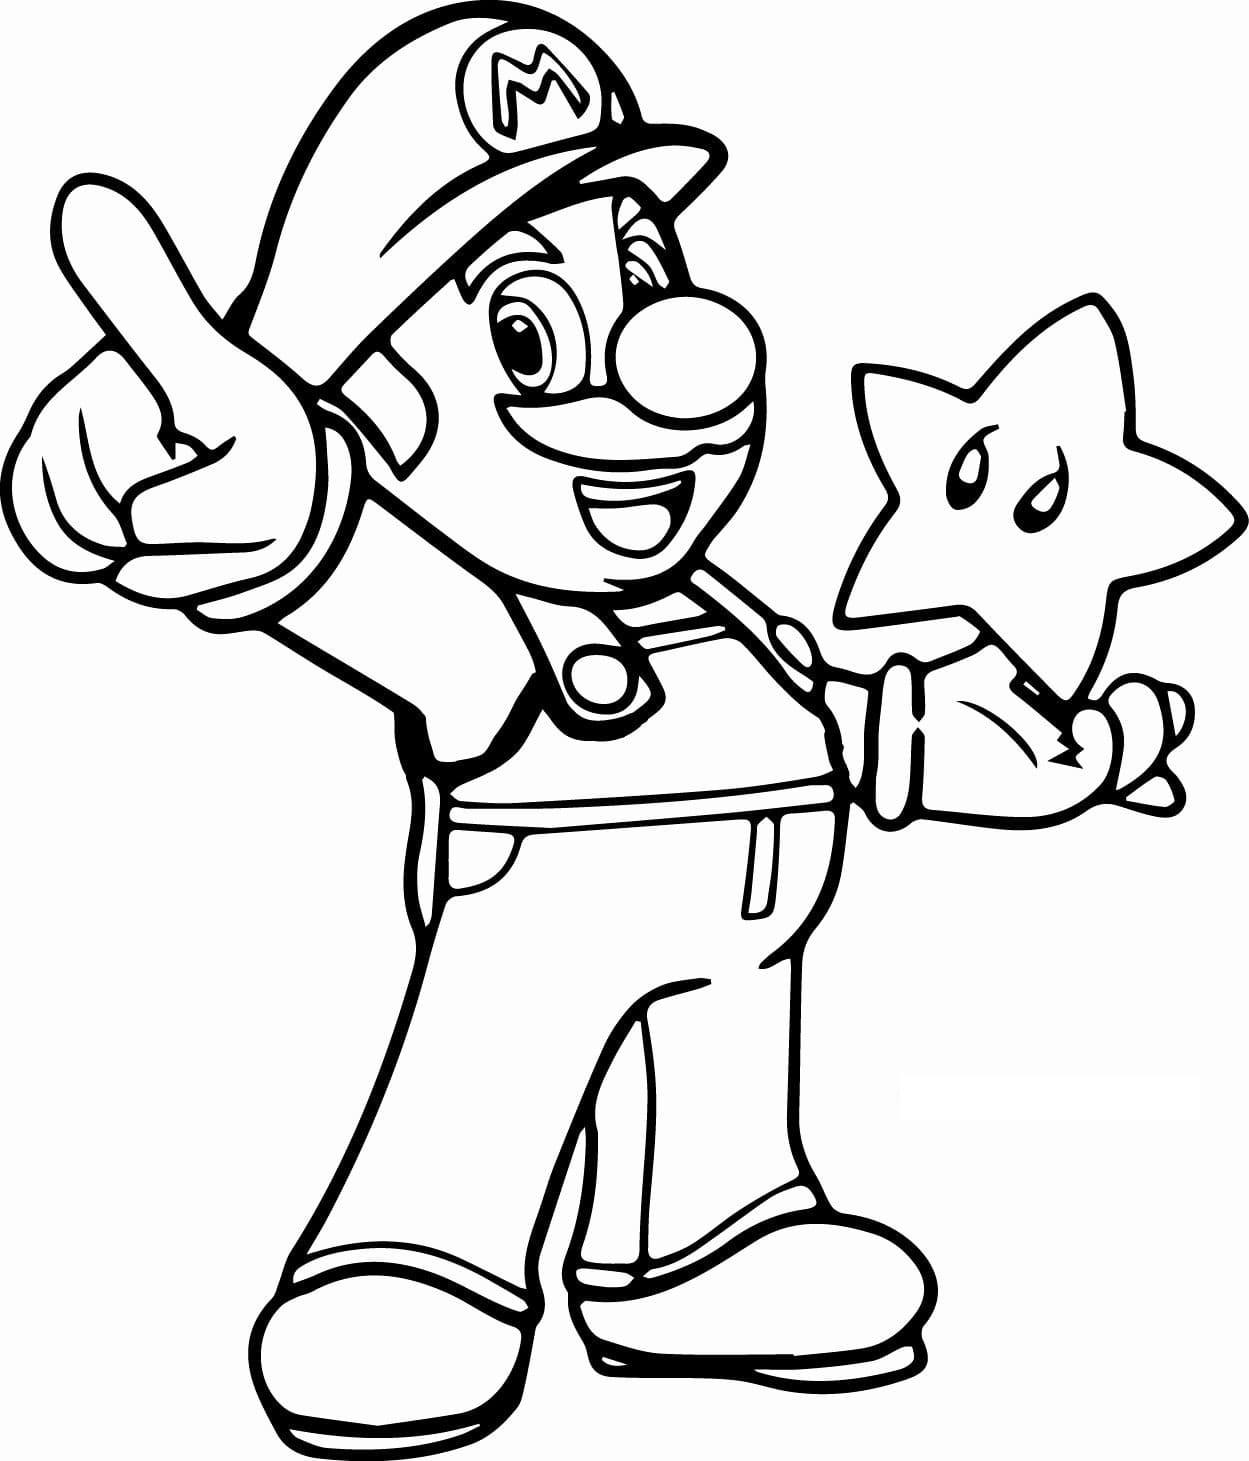 Dibujo 42 de Super Mario para imprimir y colorear